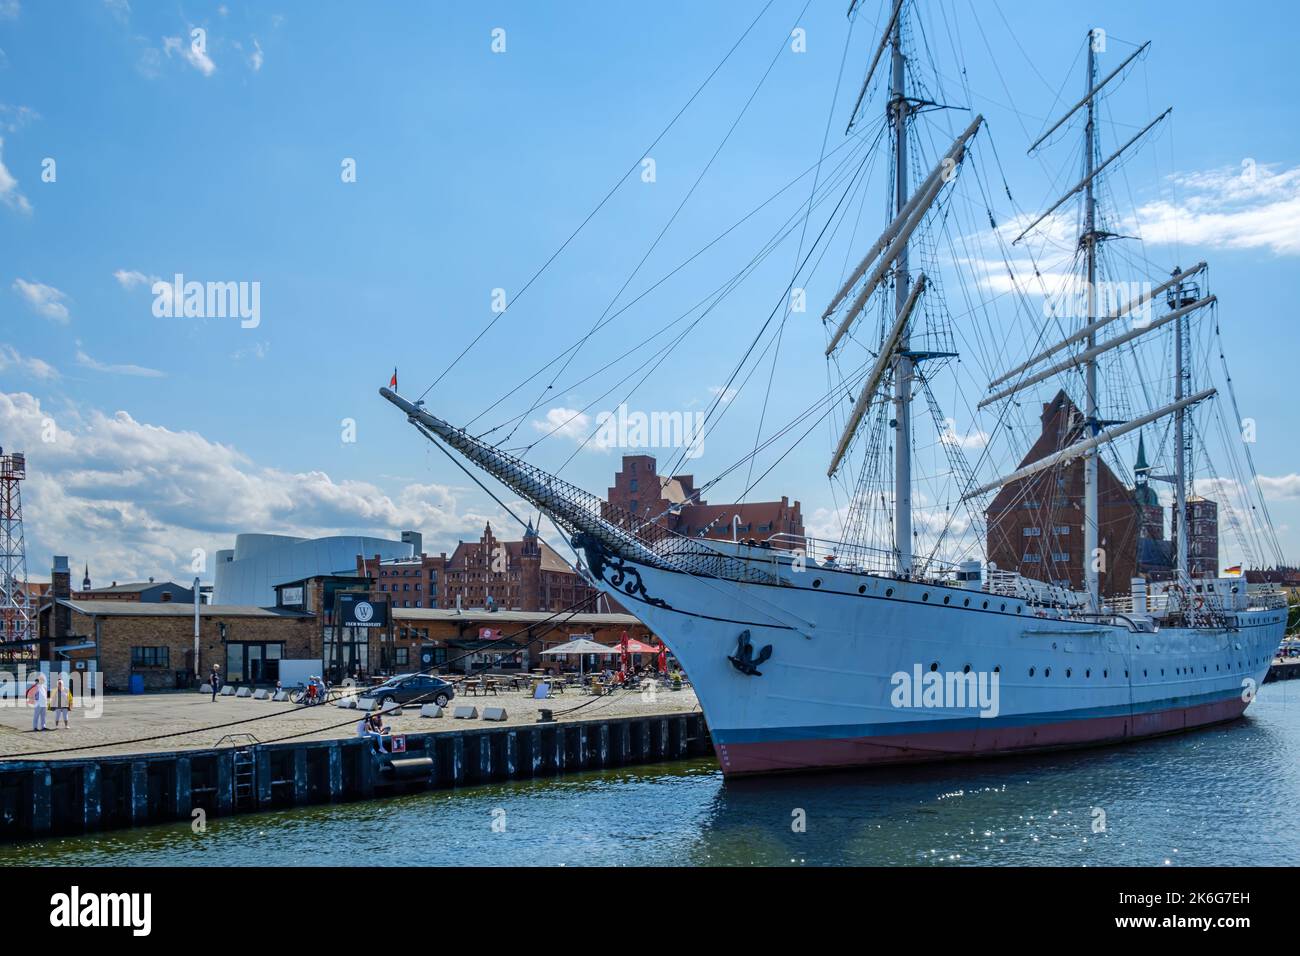 Le navire d'entraînement à voile GORCH FOCK, gréé comme barque, à son quai sur fond de Stralsund, Mecklembourg-Poméranie occidentale, Allemagne. Banque D'Images